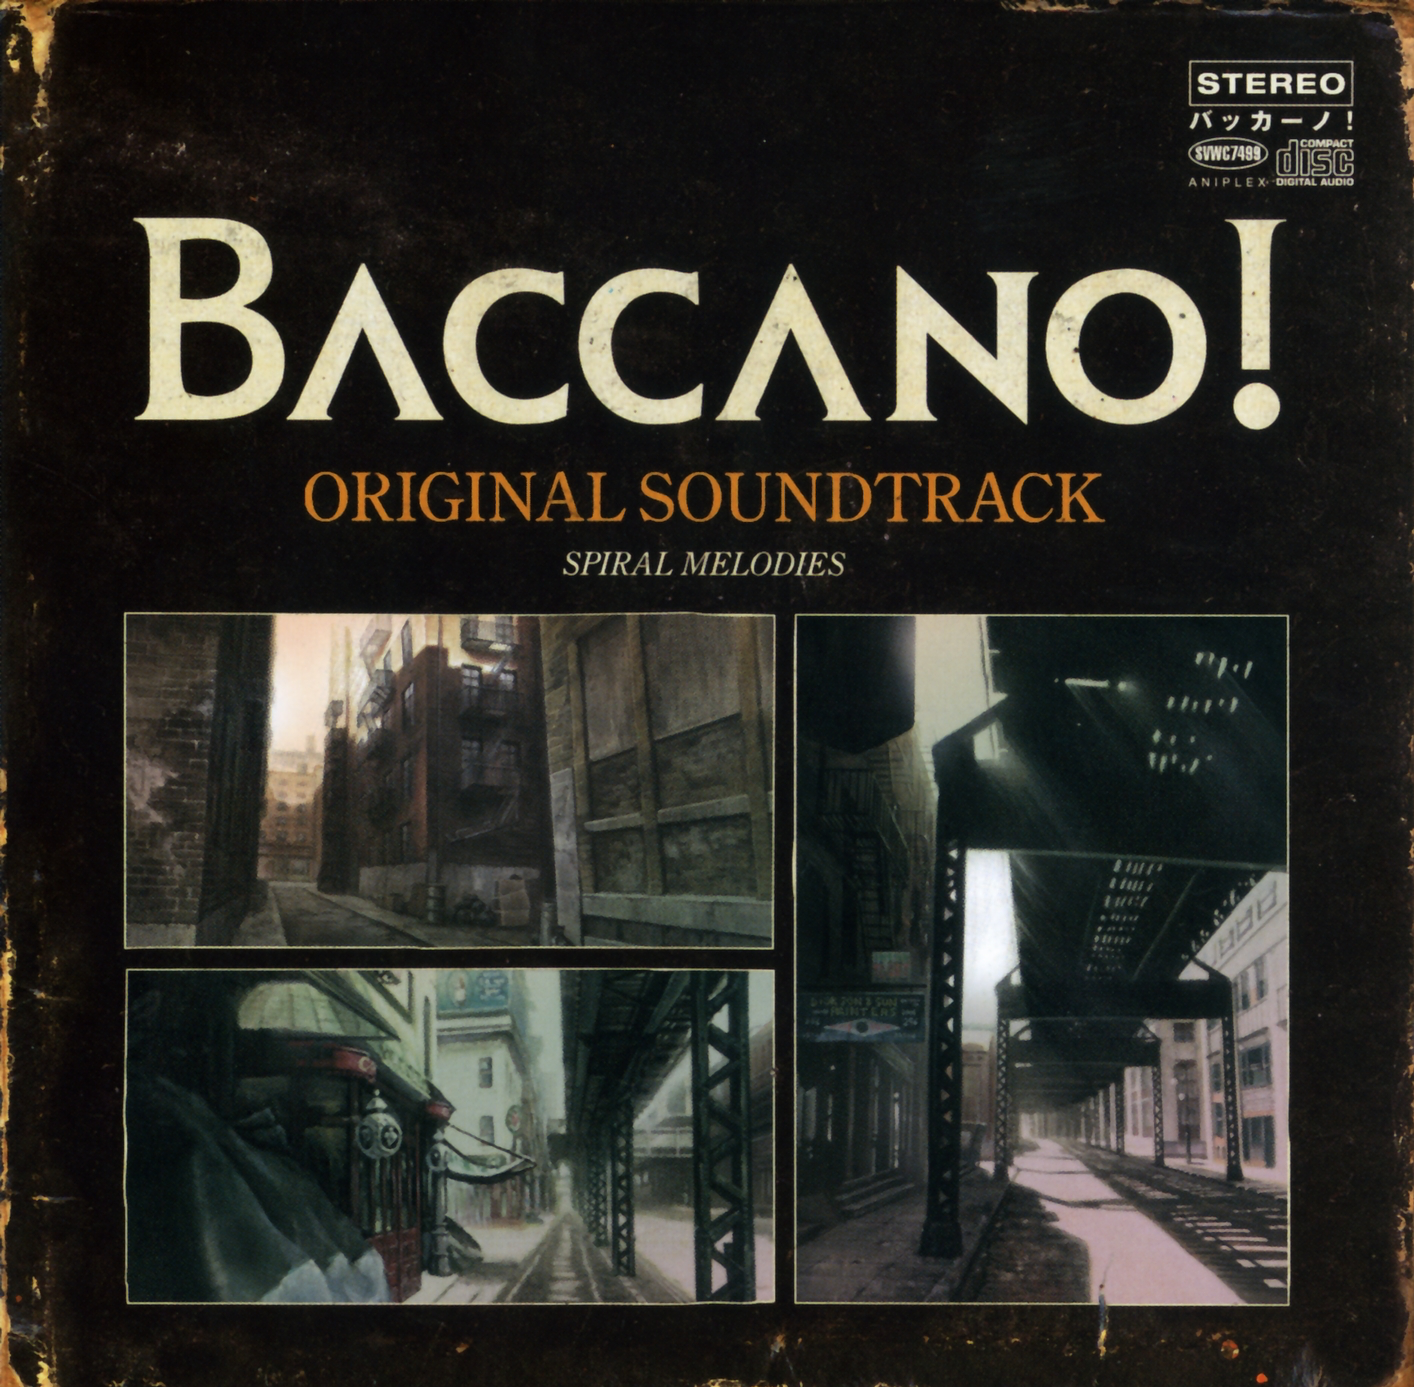 BaccanoAlbum.png